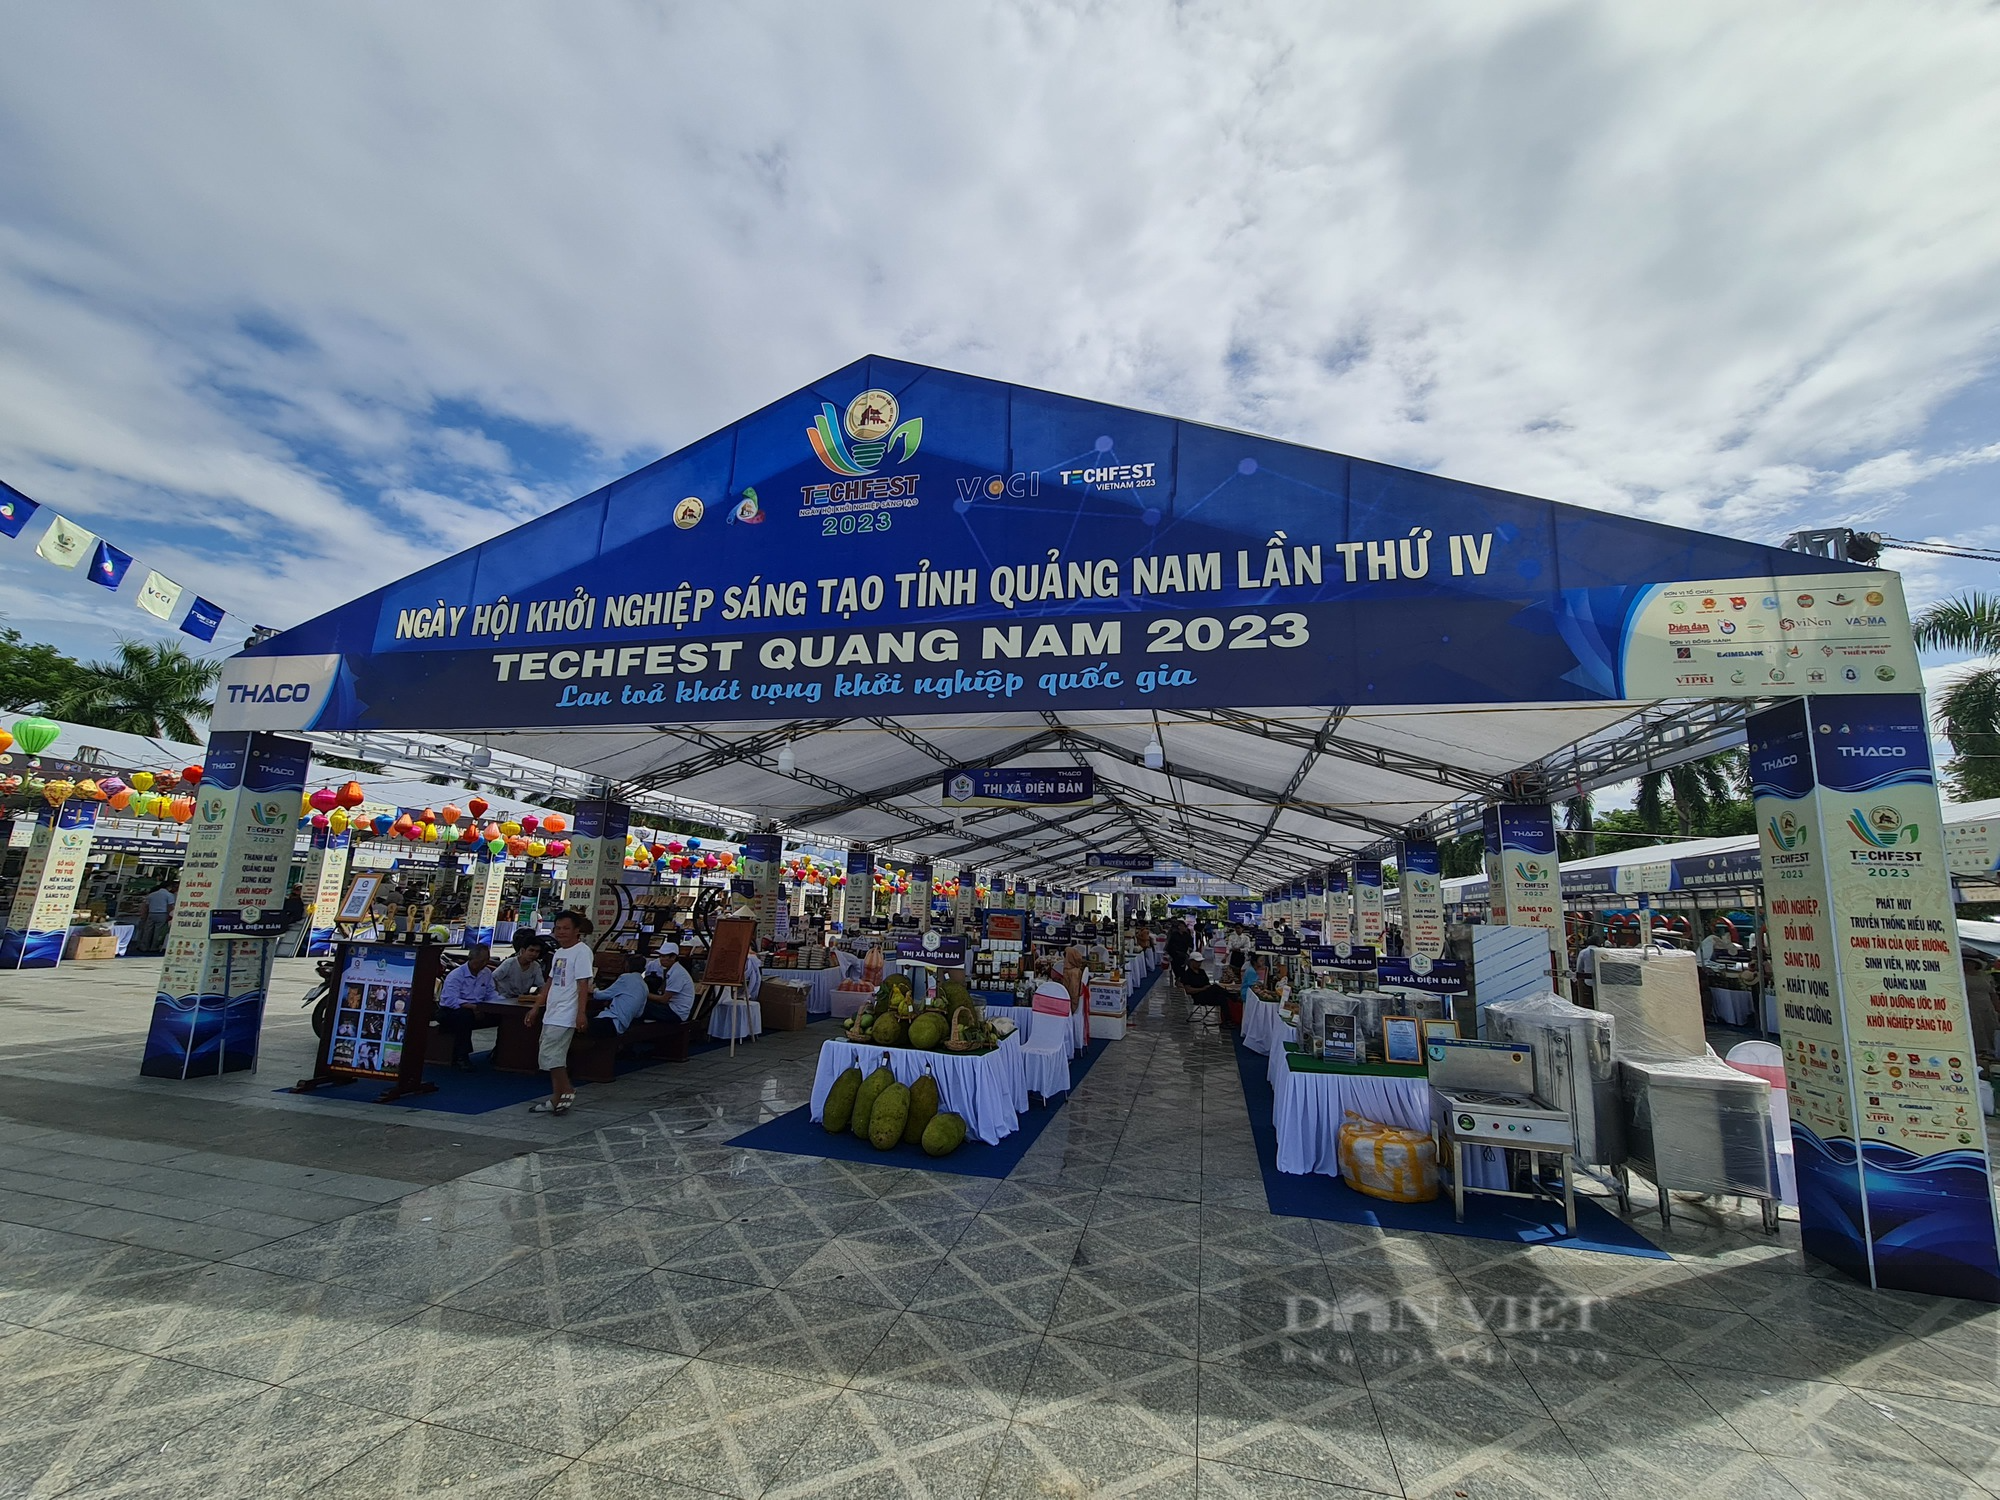 Hàng trăm sản phẩm hội tụ tại ngày hội “Khởi nghiệp sáng tạo - TechFest Quang Nam 2023” - Ảnh 1.